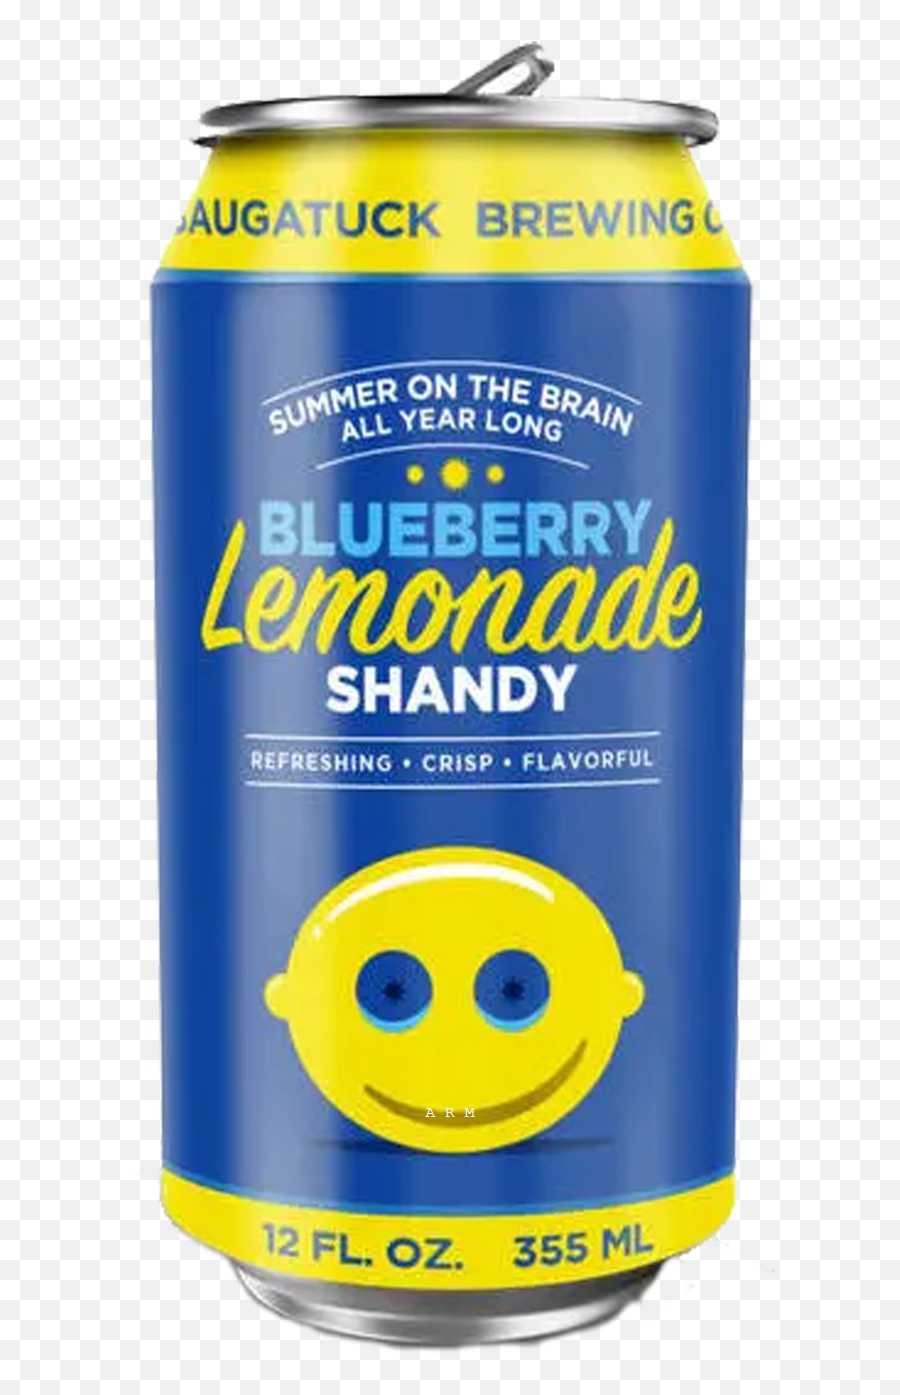 Buy Saugatuck Blueberry Lemonade Online - Happy Emoji,Beer Emoticon